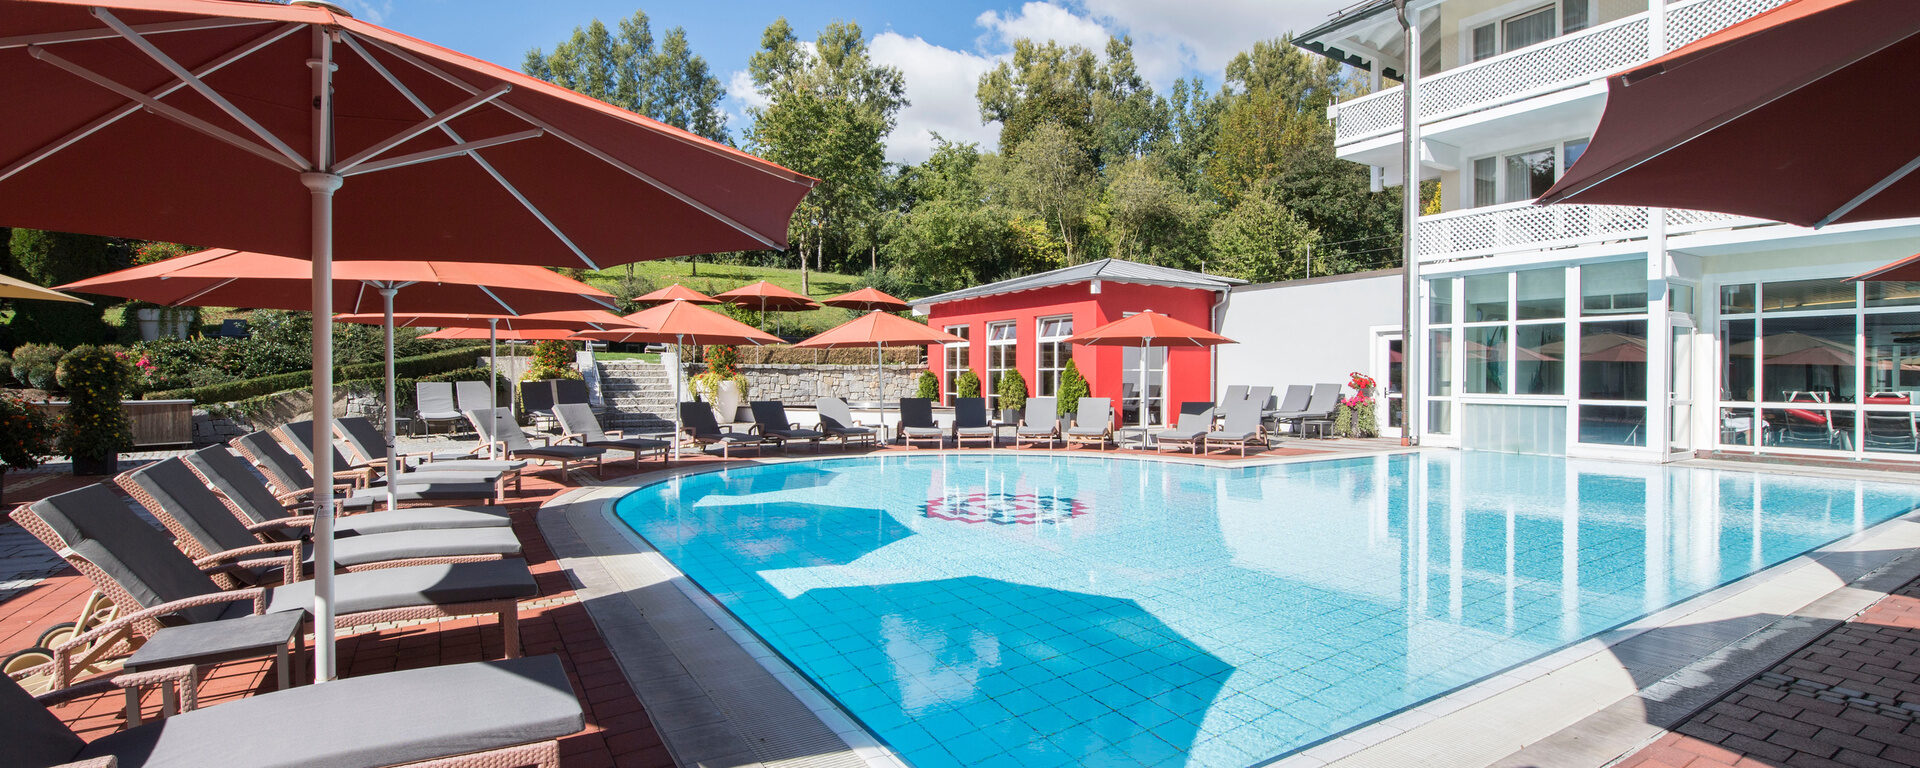 Verweilen Sie im St. Wolfgang Hotel Pool im Außenbereich und genießen Sie Ihre freien Tage